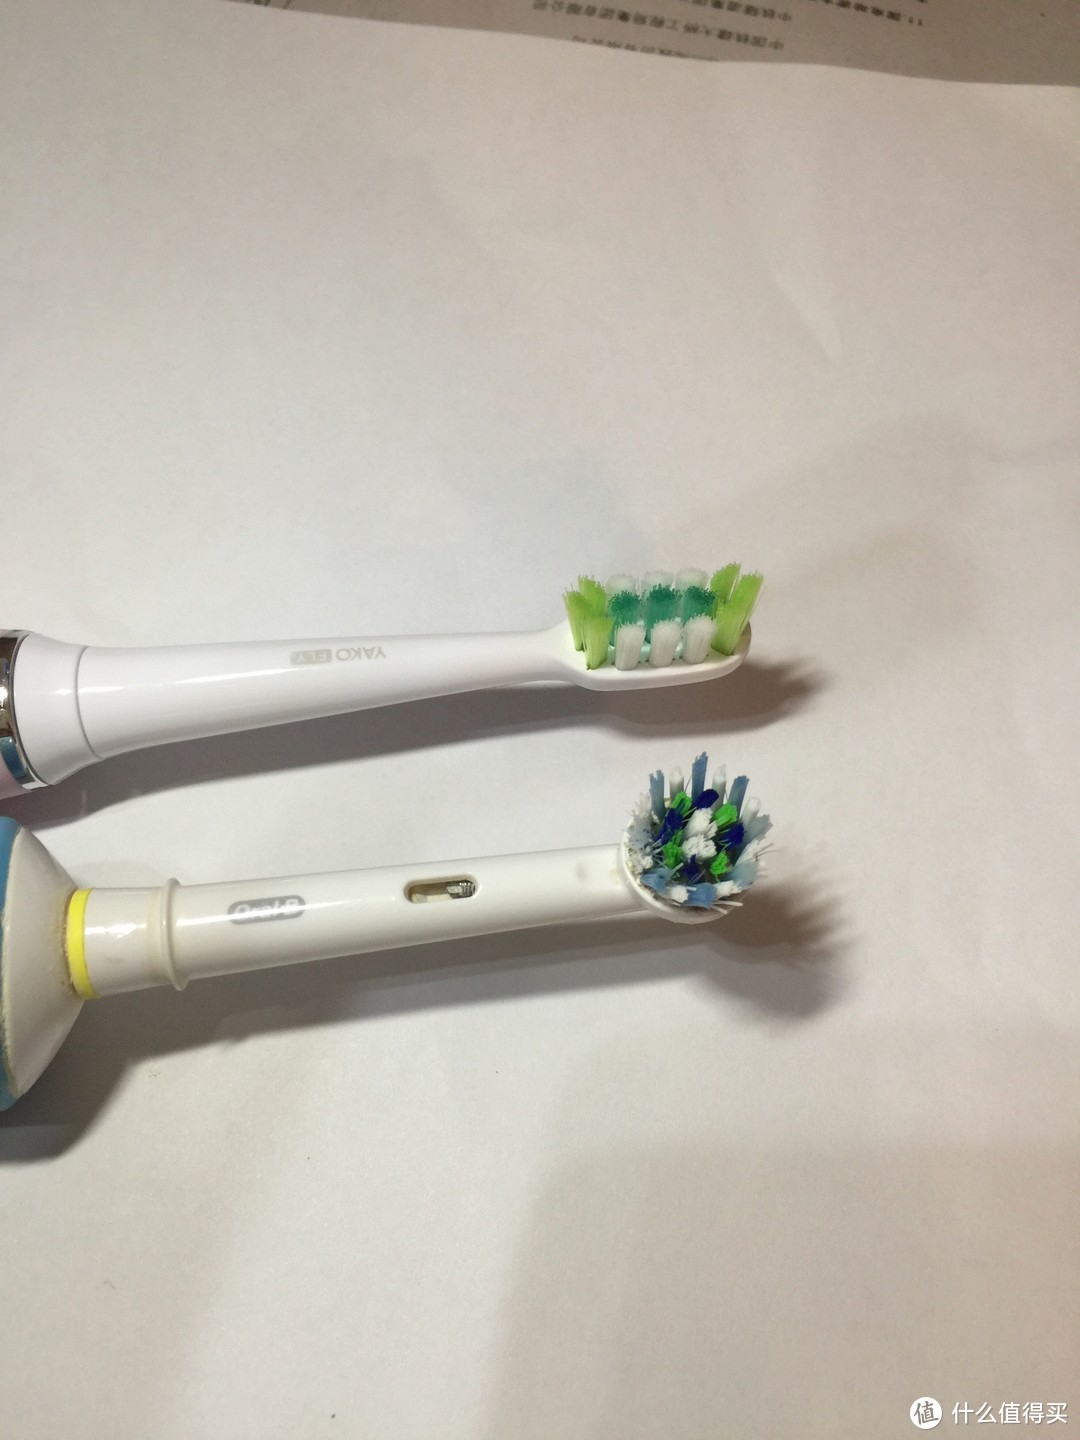 外形做工很OK，清洁能力有待提升--YAKO 磁悬电动牙刷 O1 众测体验